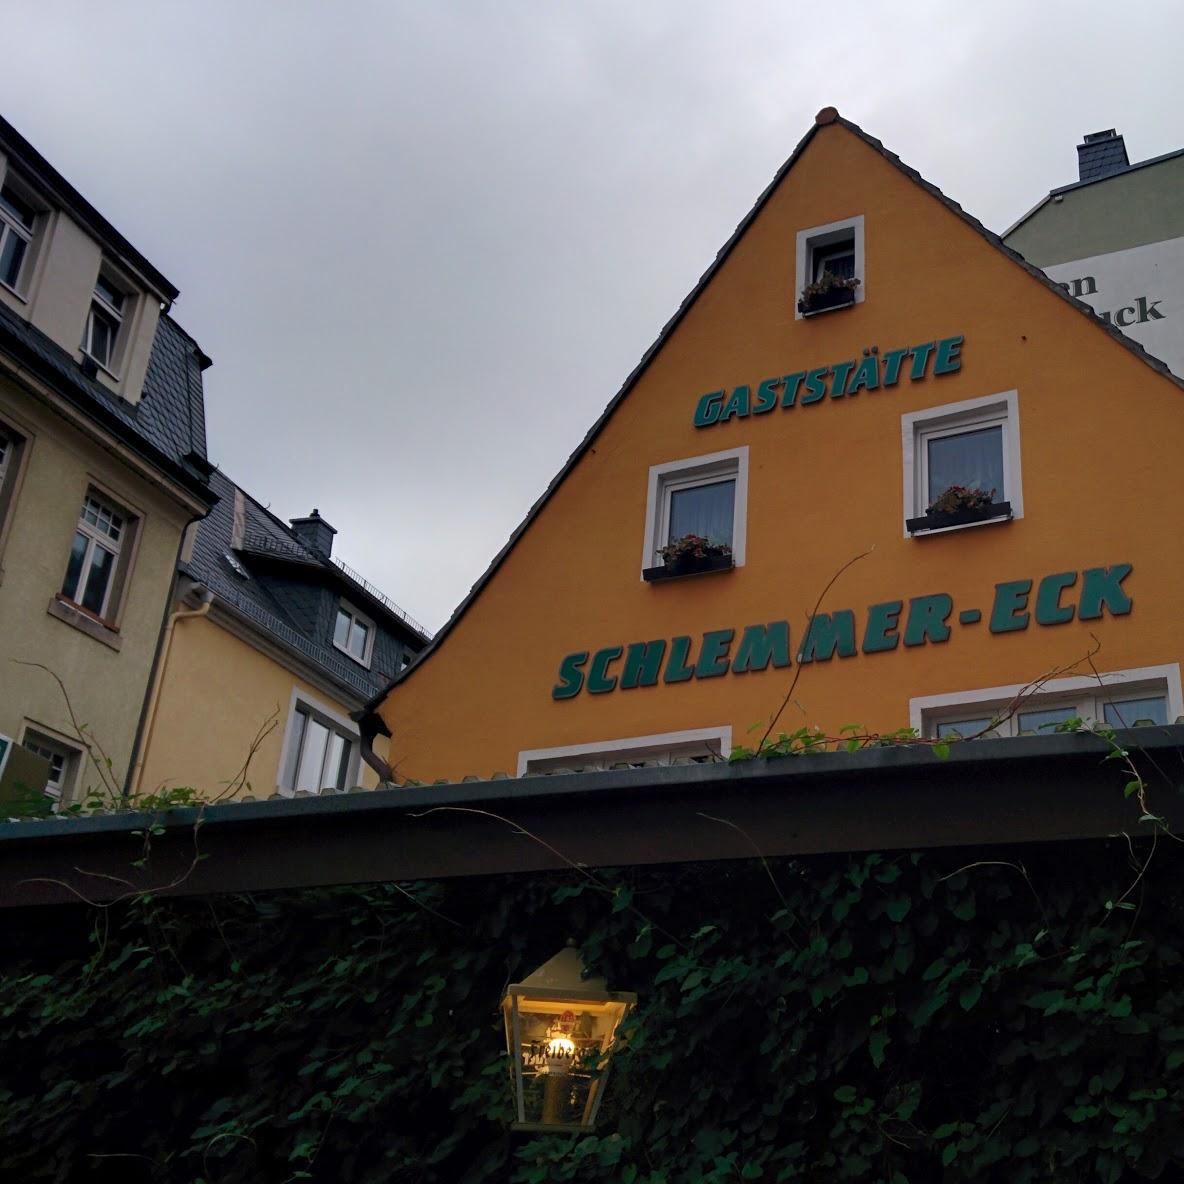 Restaurant "Schlemmer-Eck" in Bad Schandau